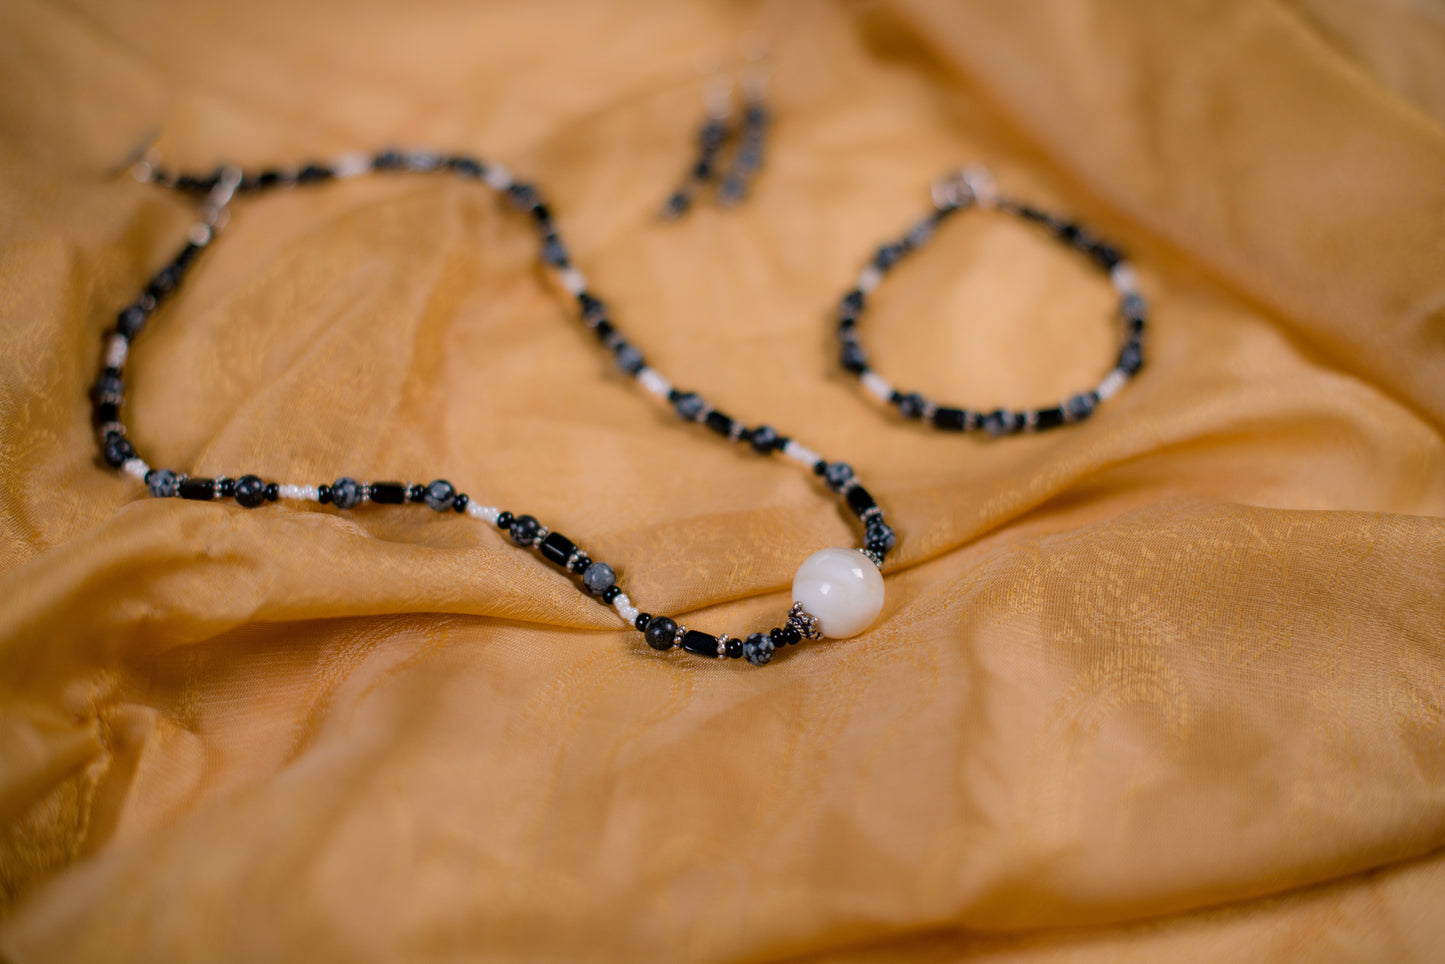 Black, Gray & White Necklace/Bracelet/Earrings Set